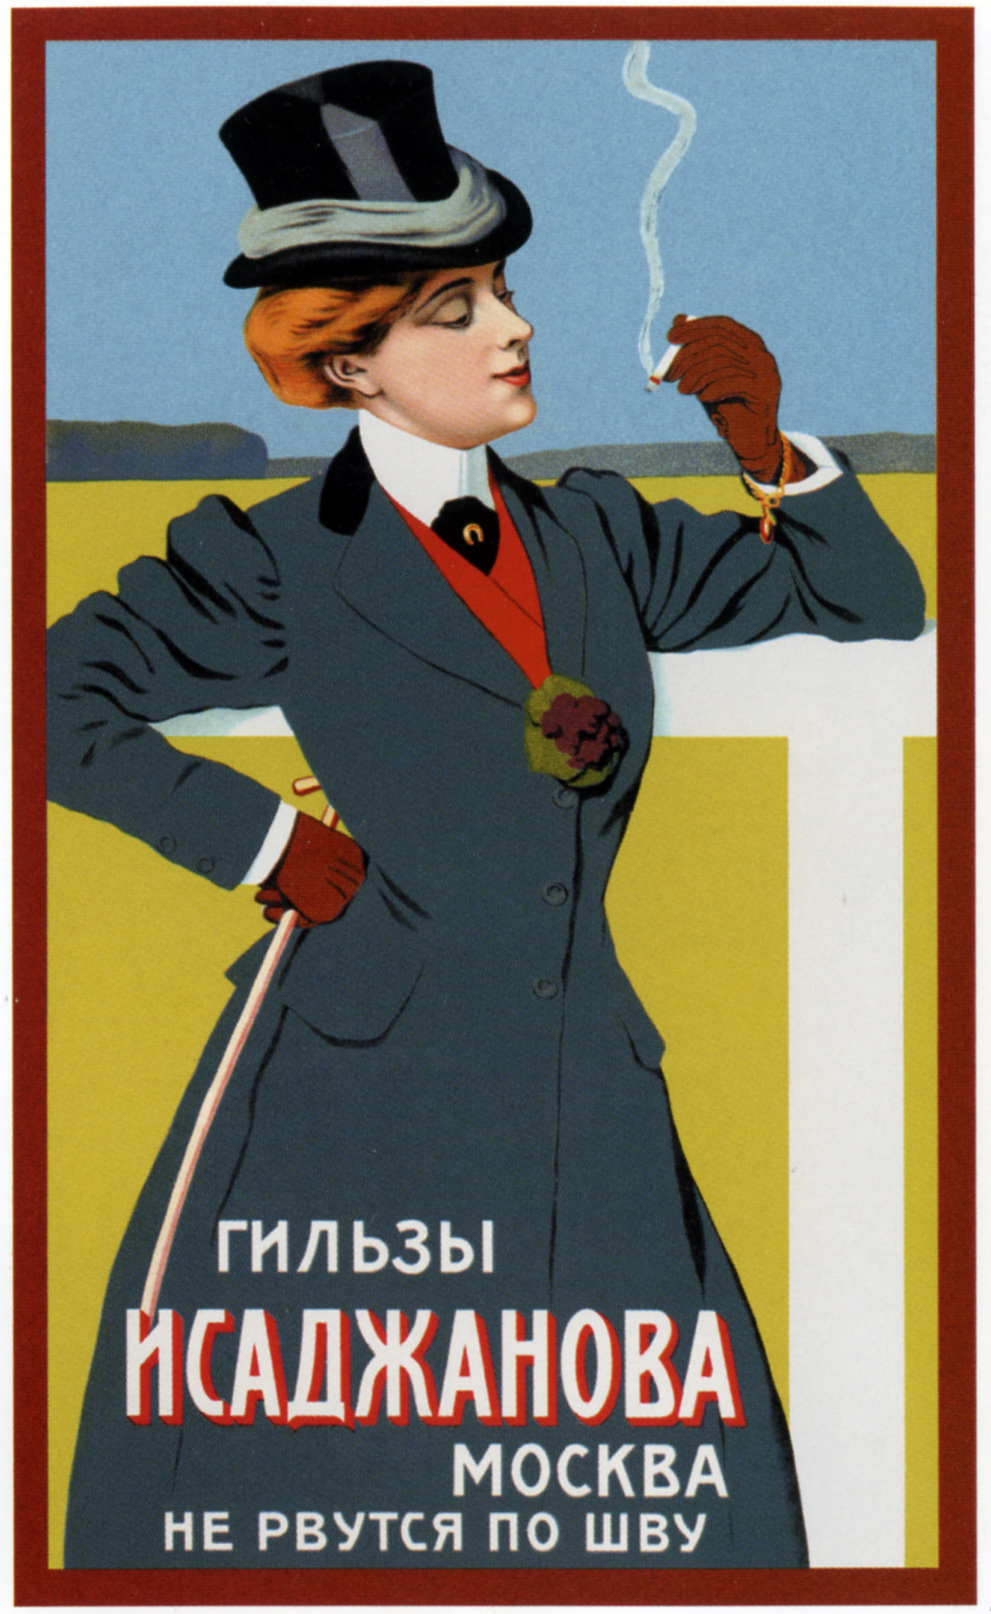 Plakat rosyjski 1883 -1917 - Gilzi Isadzhanova 1900 neizvestniy.jpg